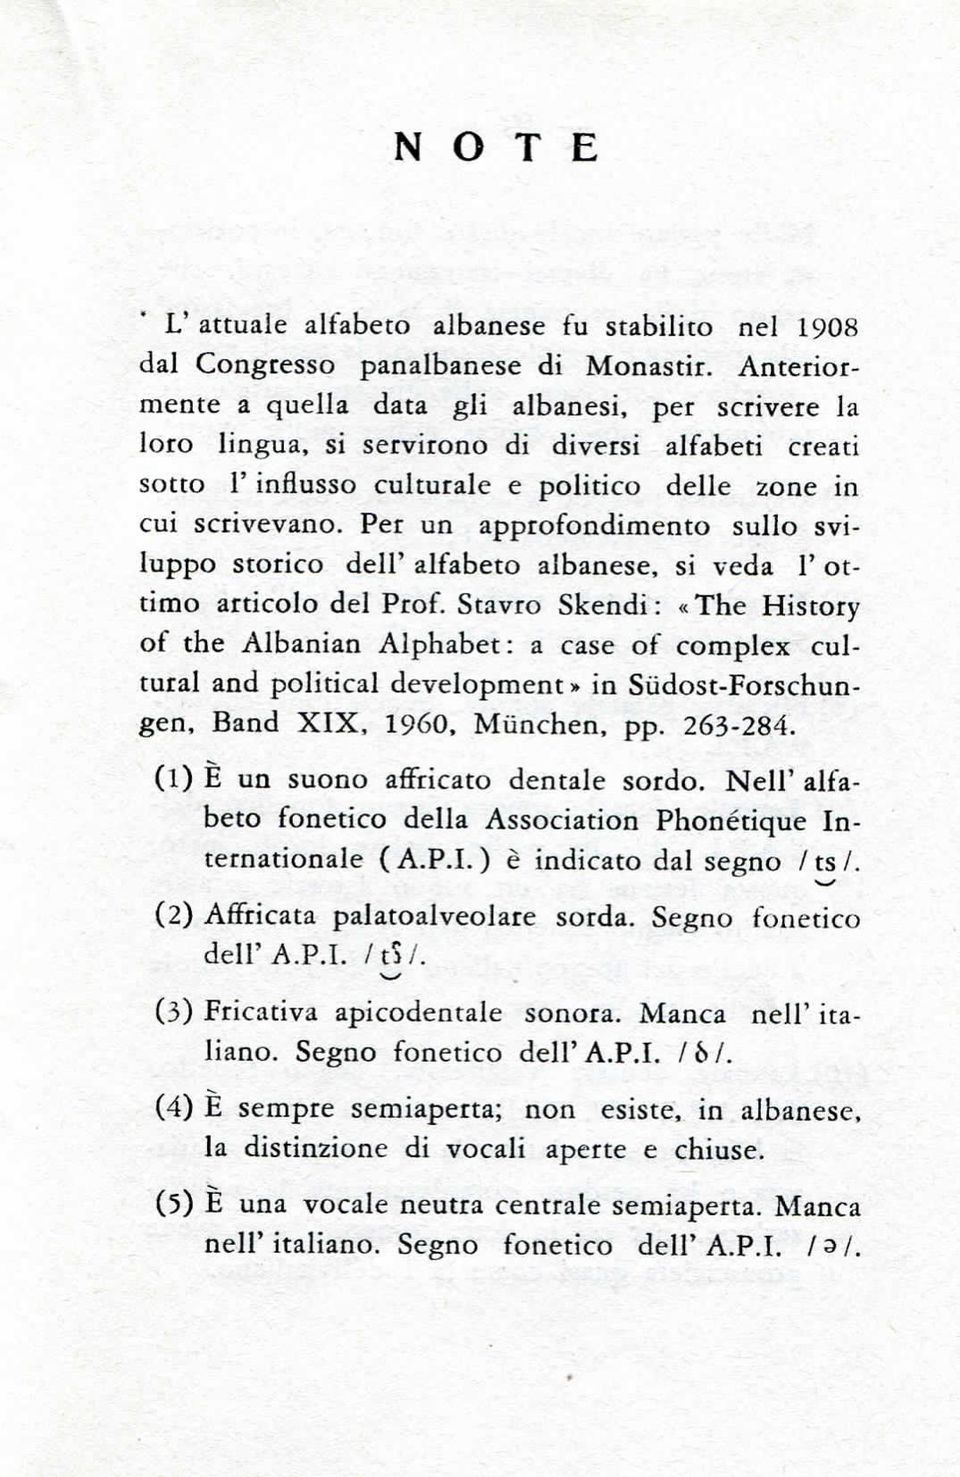 Per un approfondimento sullo sviluppo storico dell' alfabeto albanese, si veda 1' ottimo articolo del Prof Stavro Skendi : «The History of the Albanian Alphabet : a case of complex cultural and